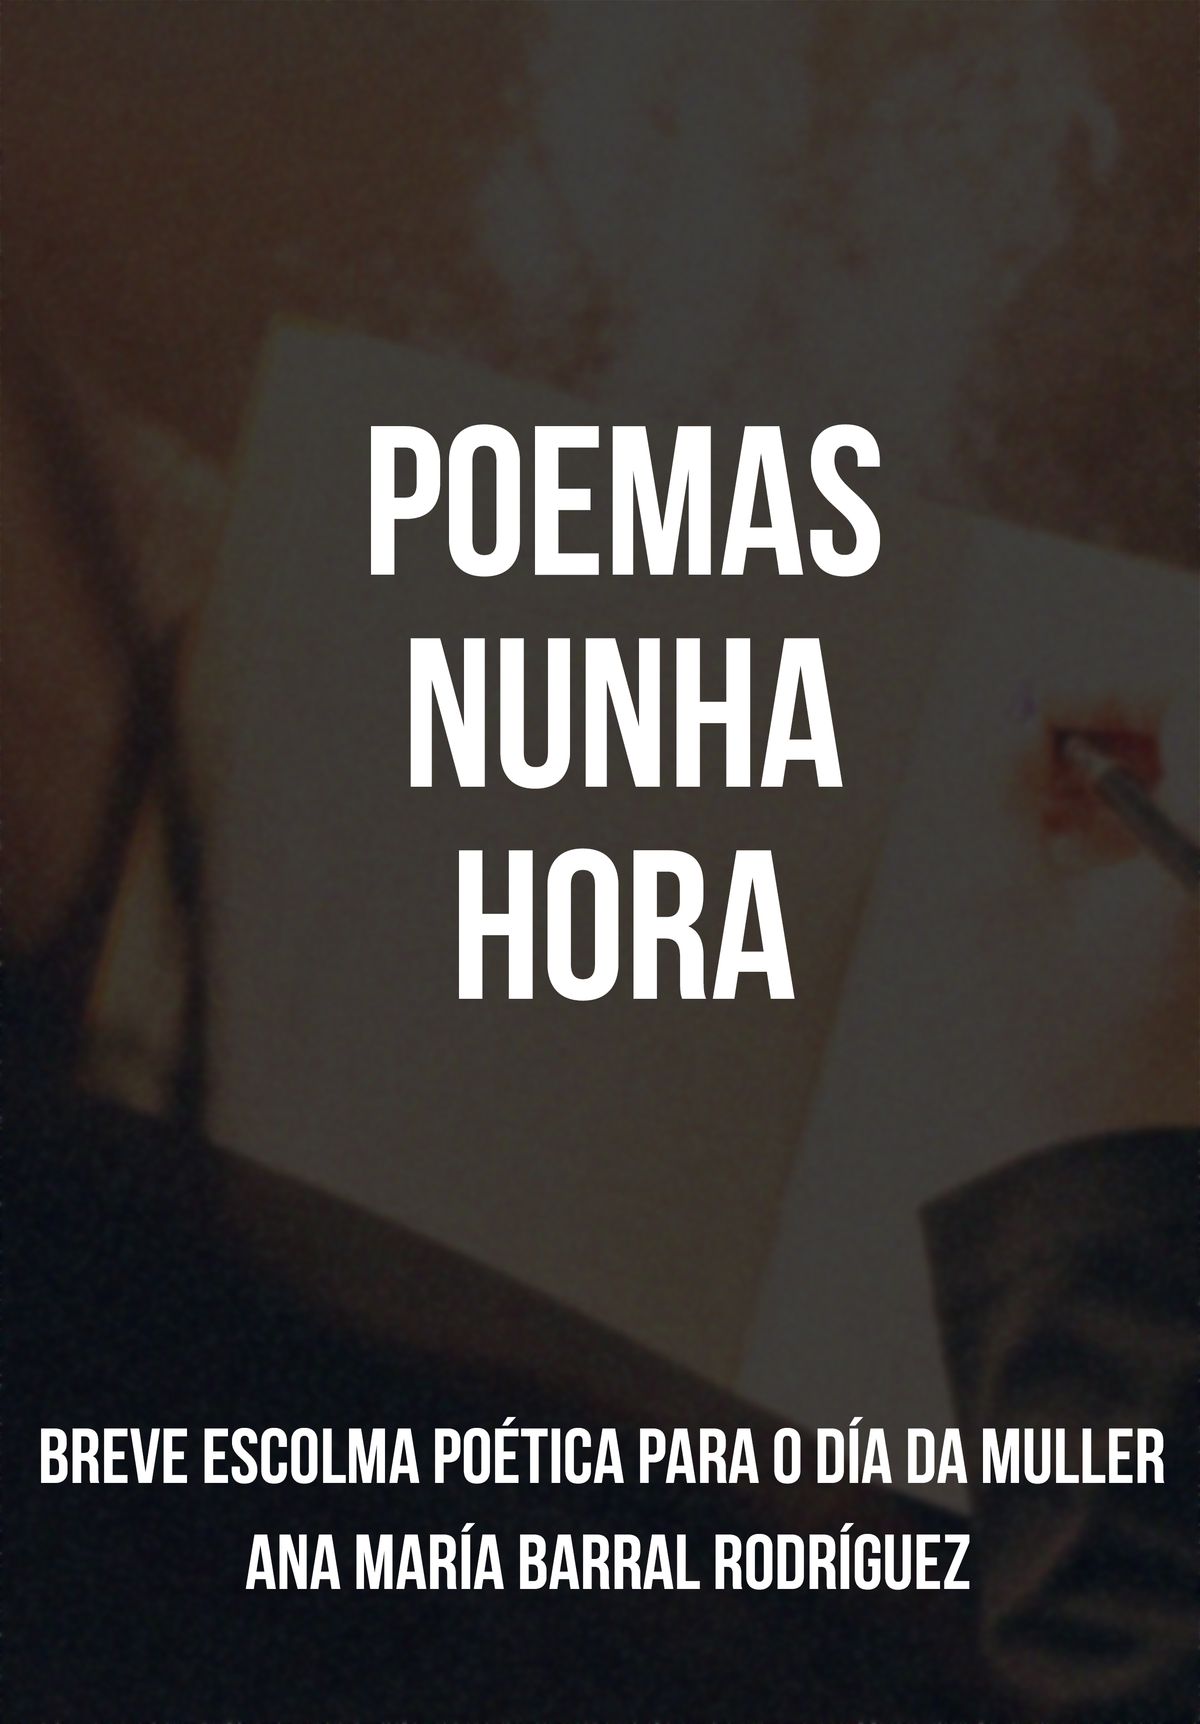 Poemas nunha hora (Ana María Barral Rodríguez)